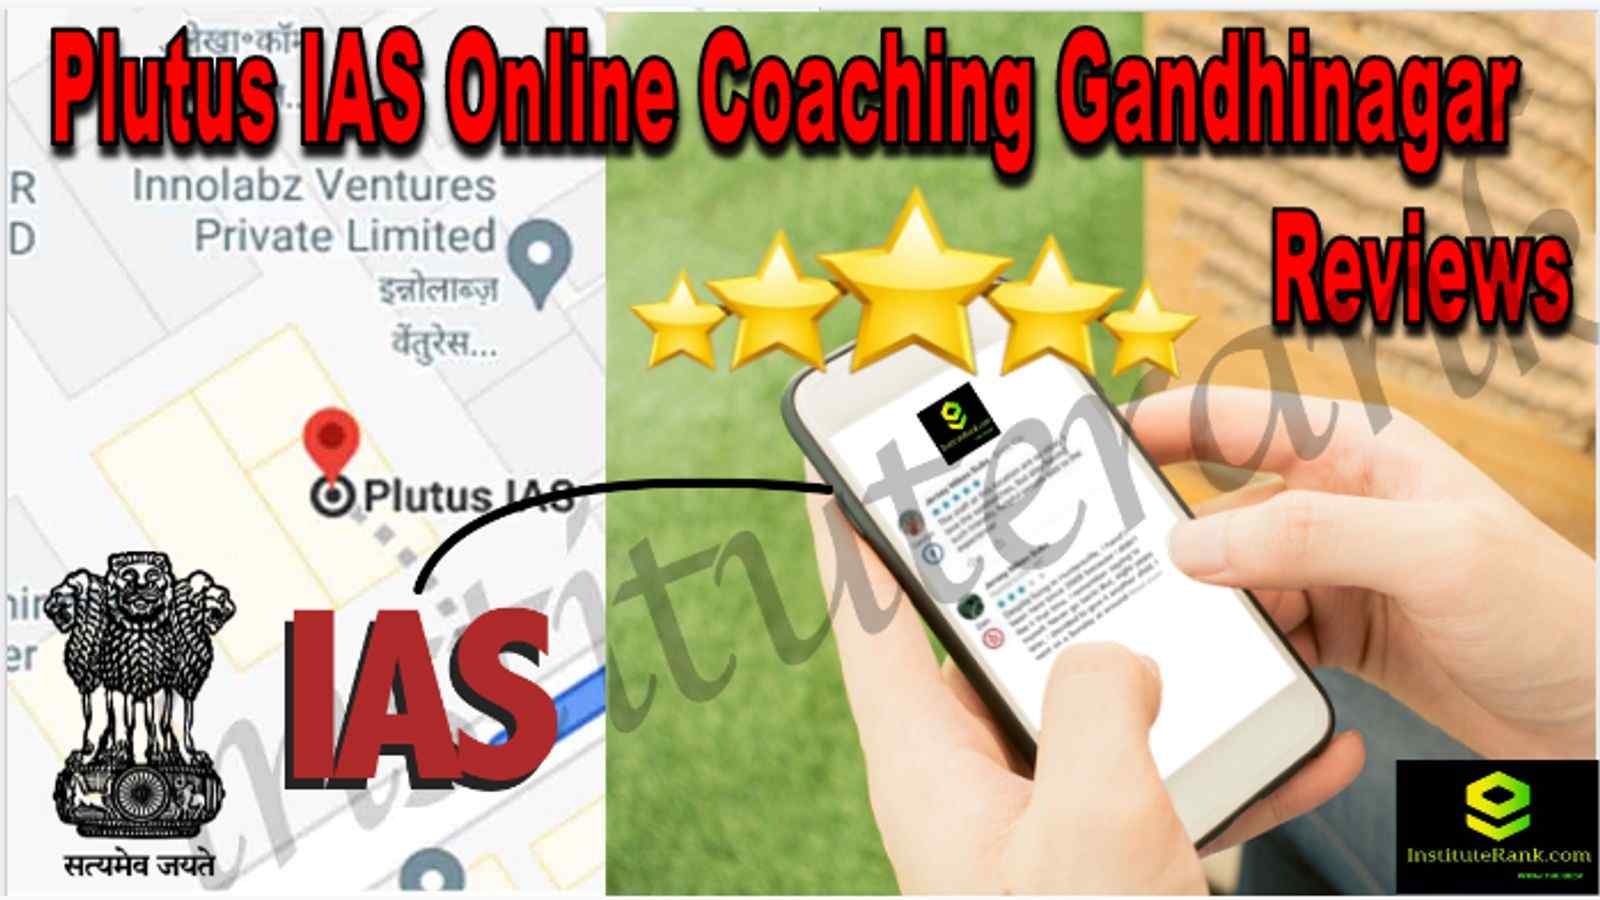 Plutus IAS Online Coaching Gandhinagar Reviews